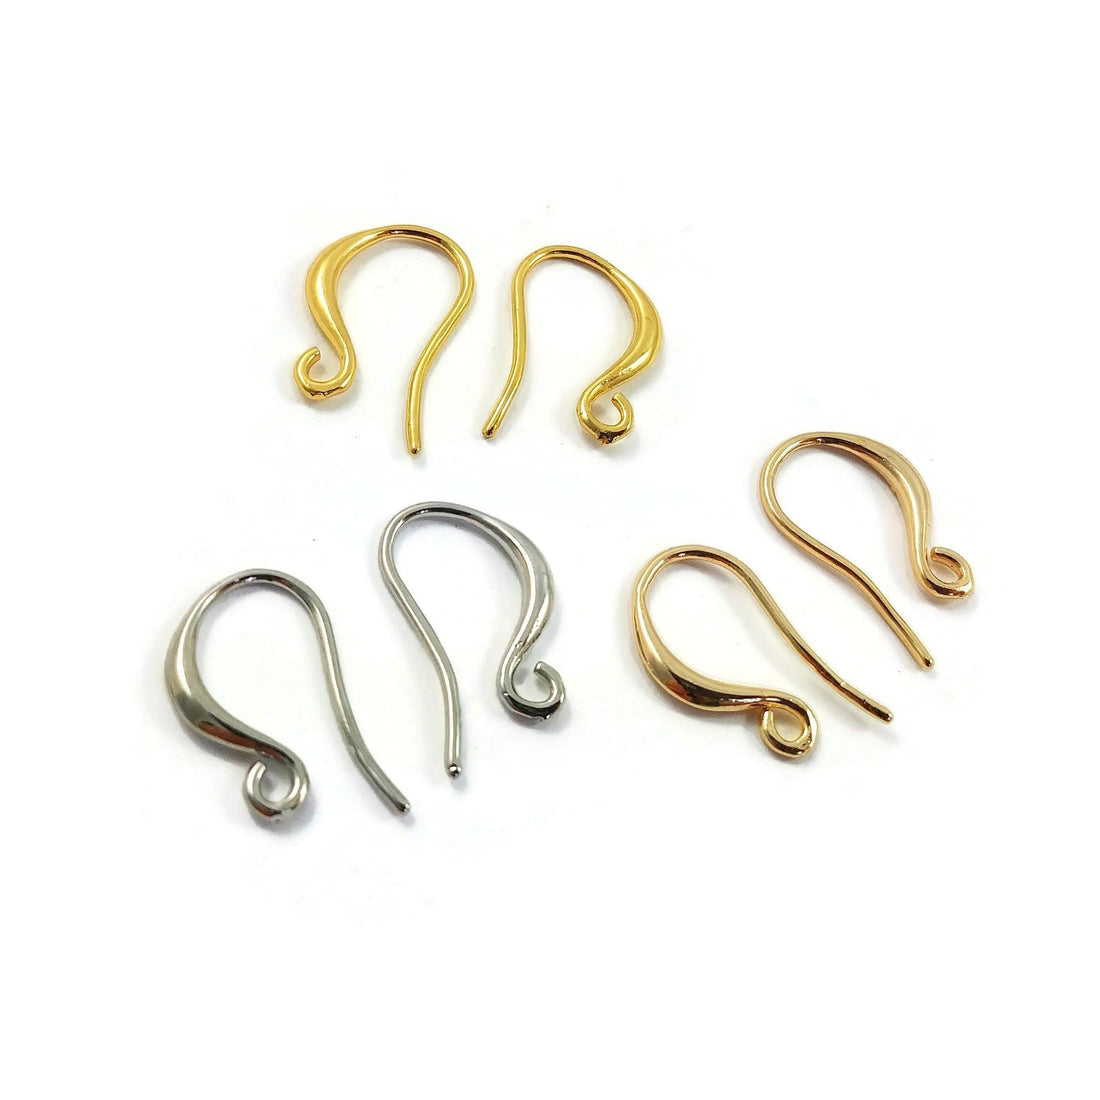 Earring hooks for sensitive ears, Hypoallergenic jewelry making